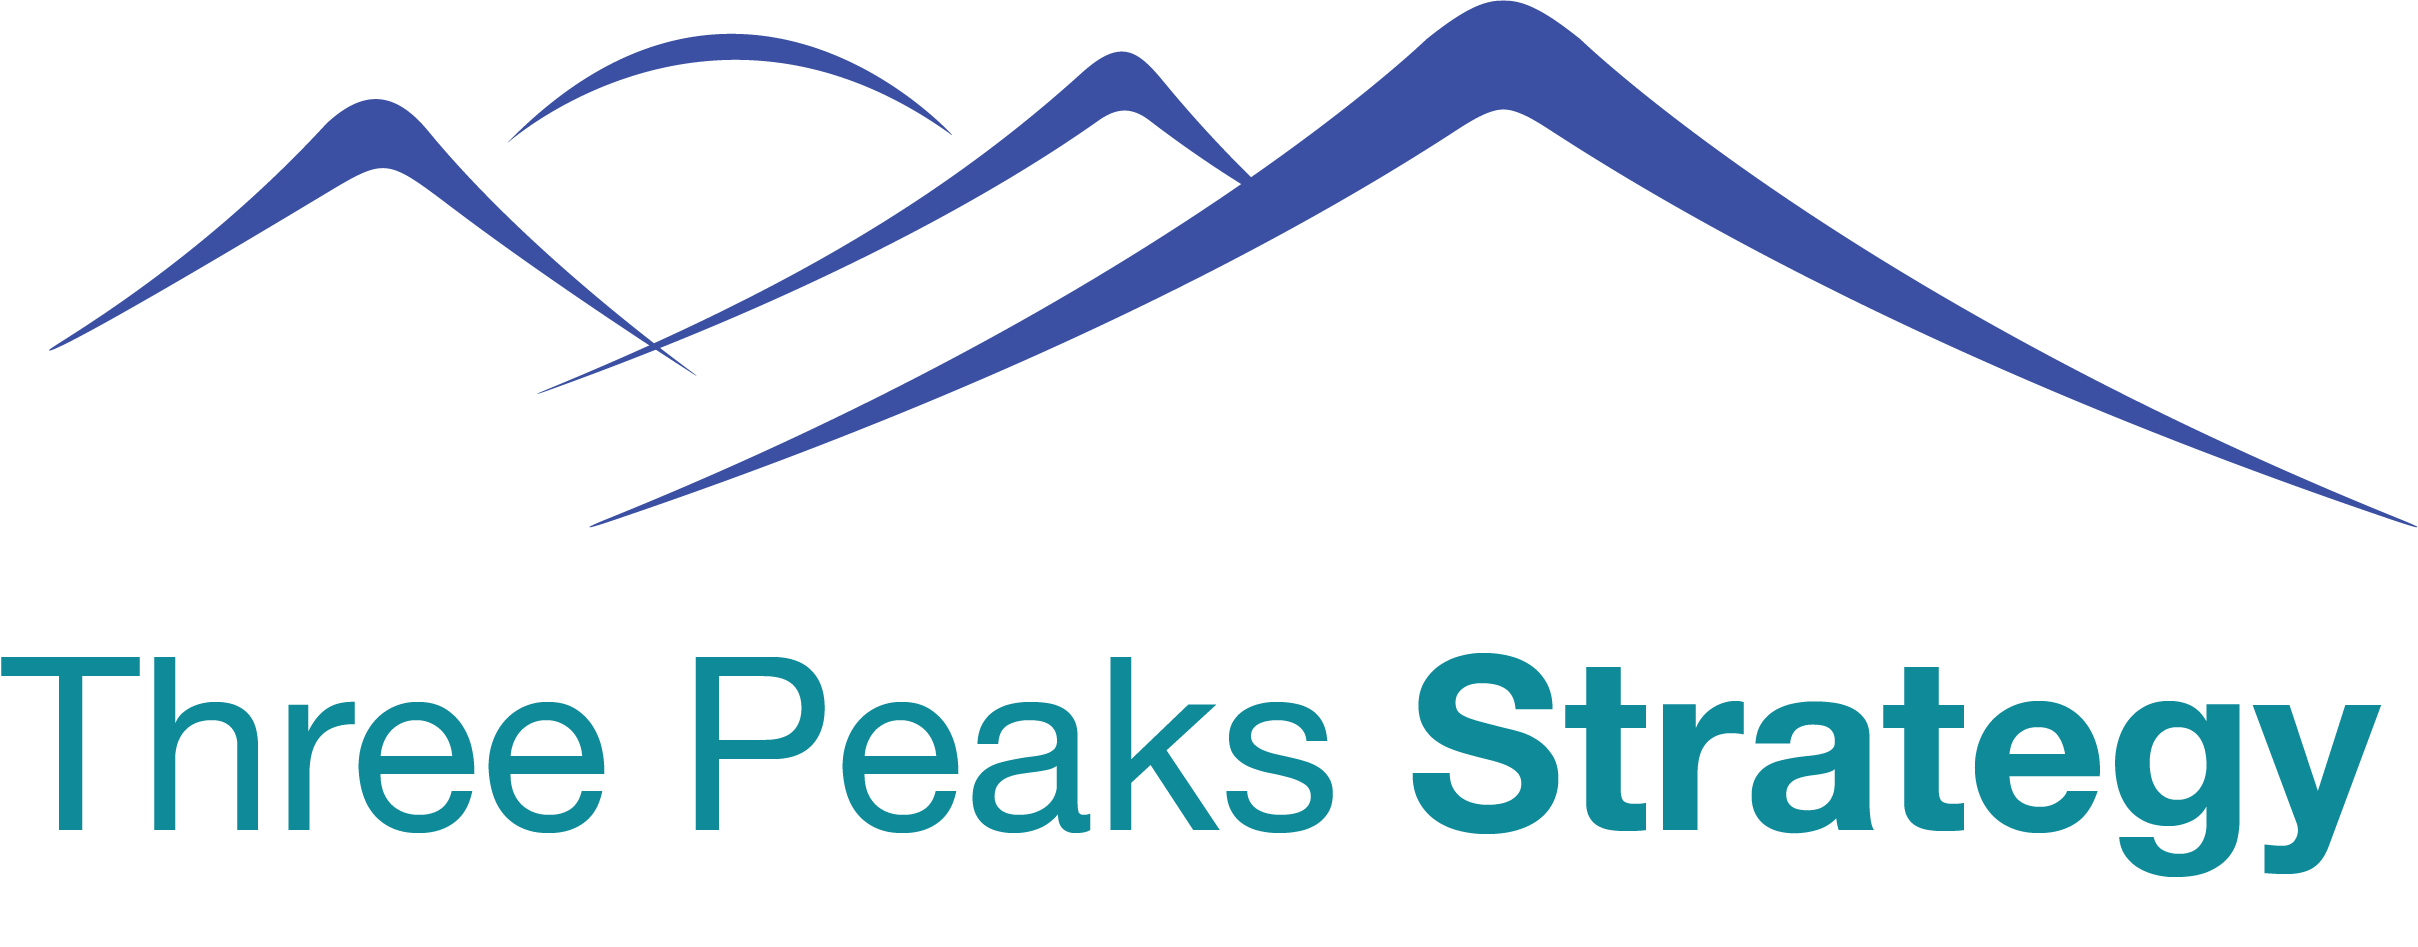 Three Peaks Strategies DEMO